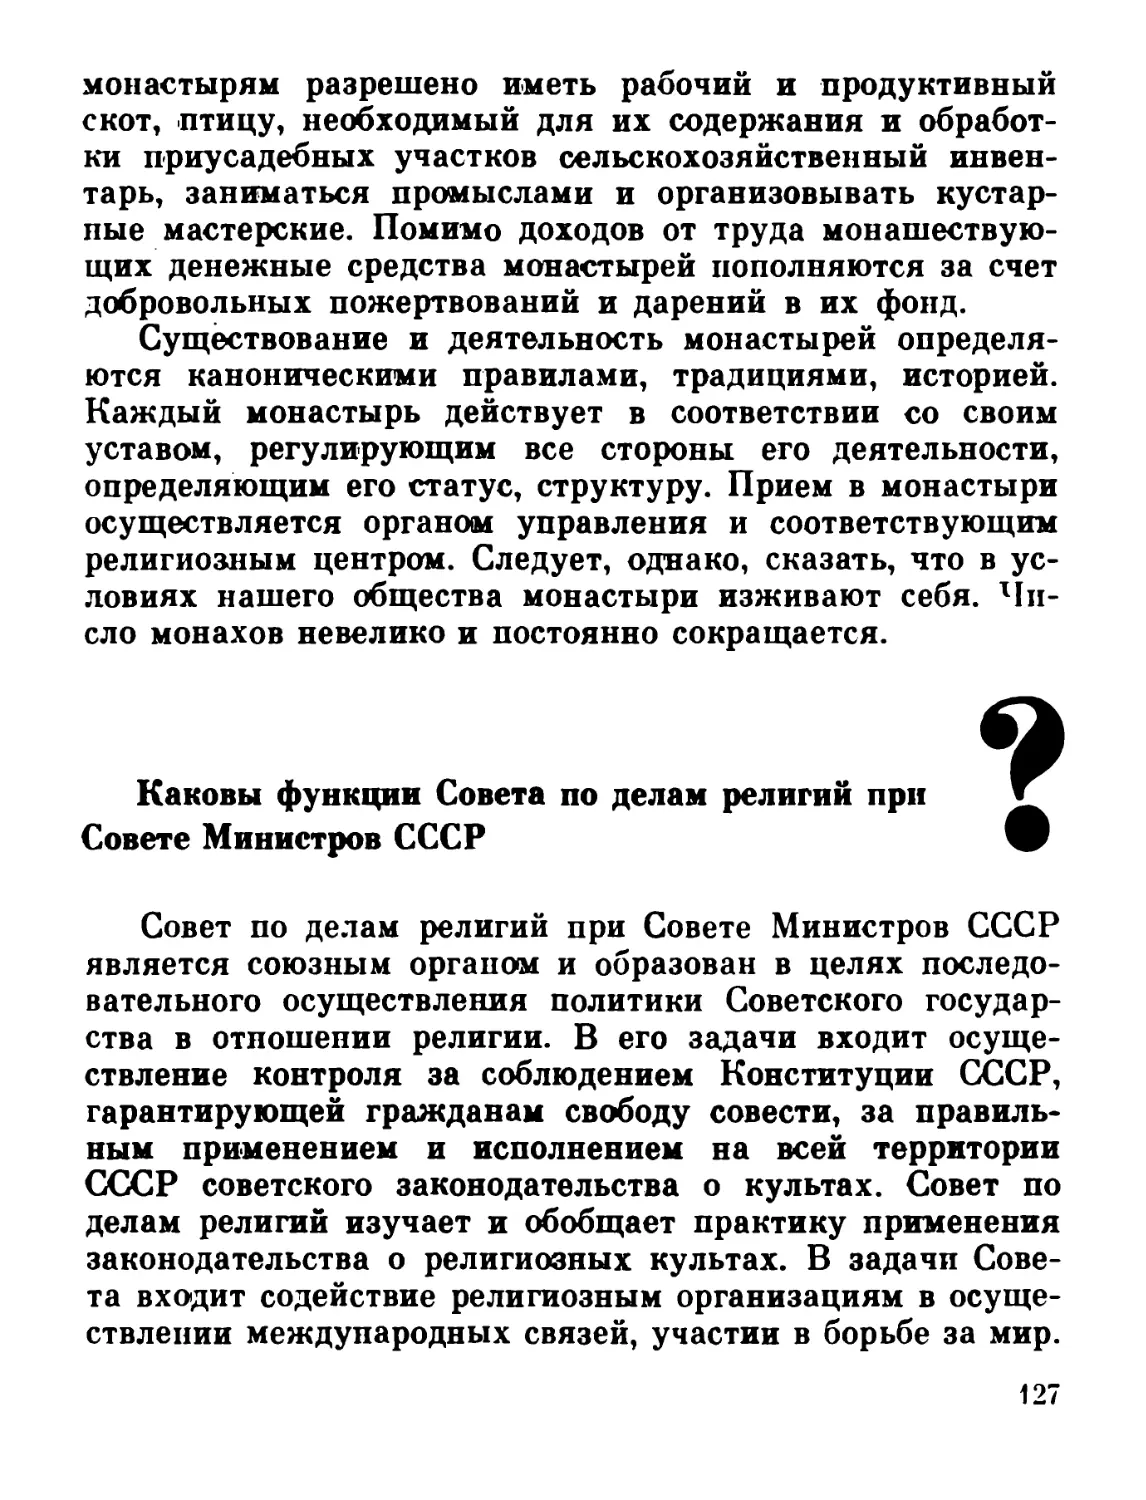 Каковы функции Совета по делам религий при Совете Министров СССР?